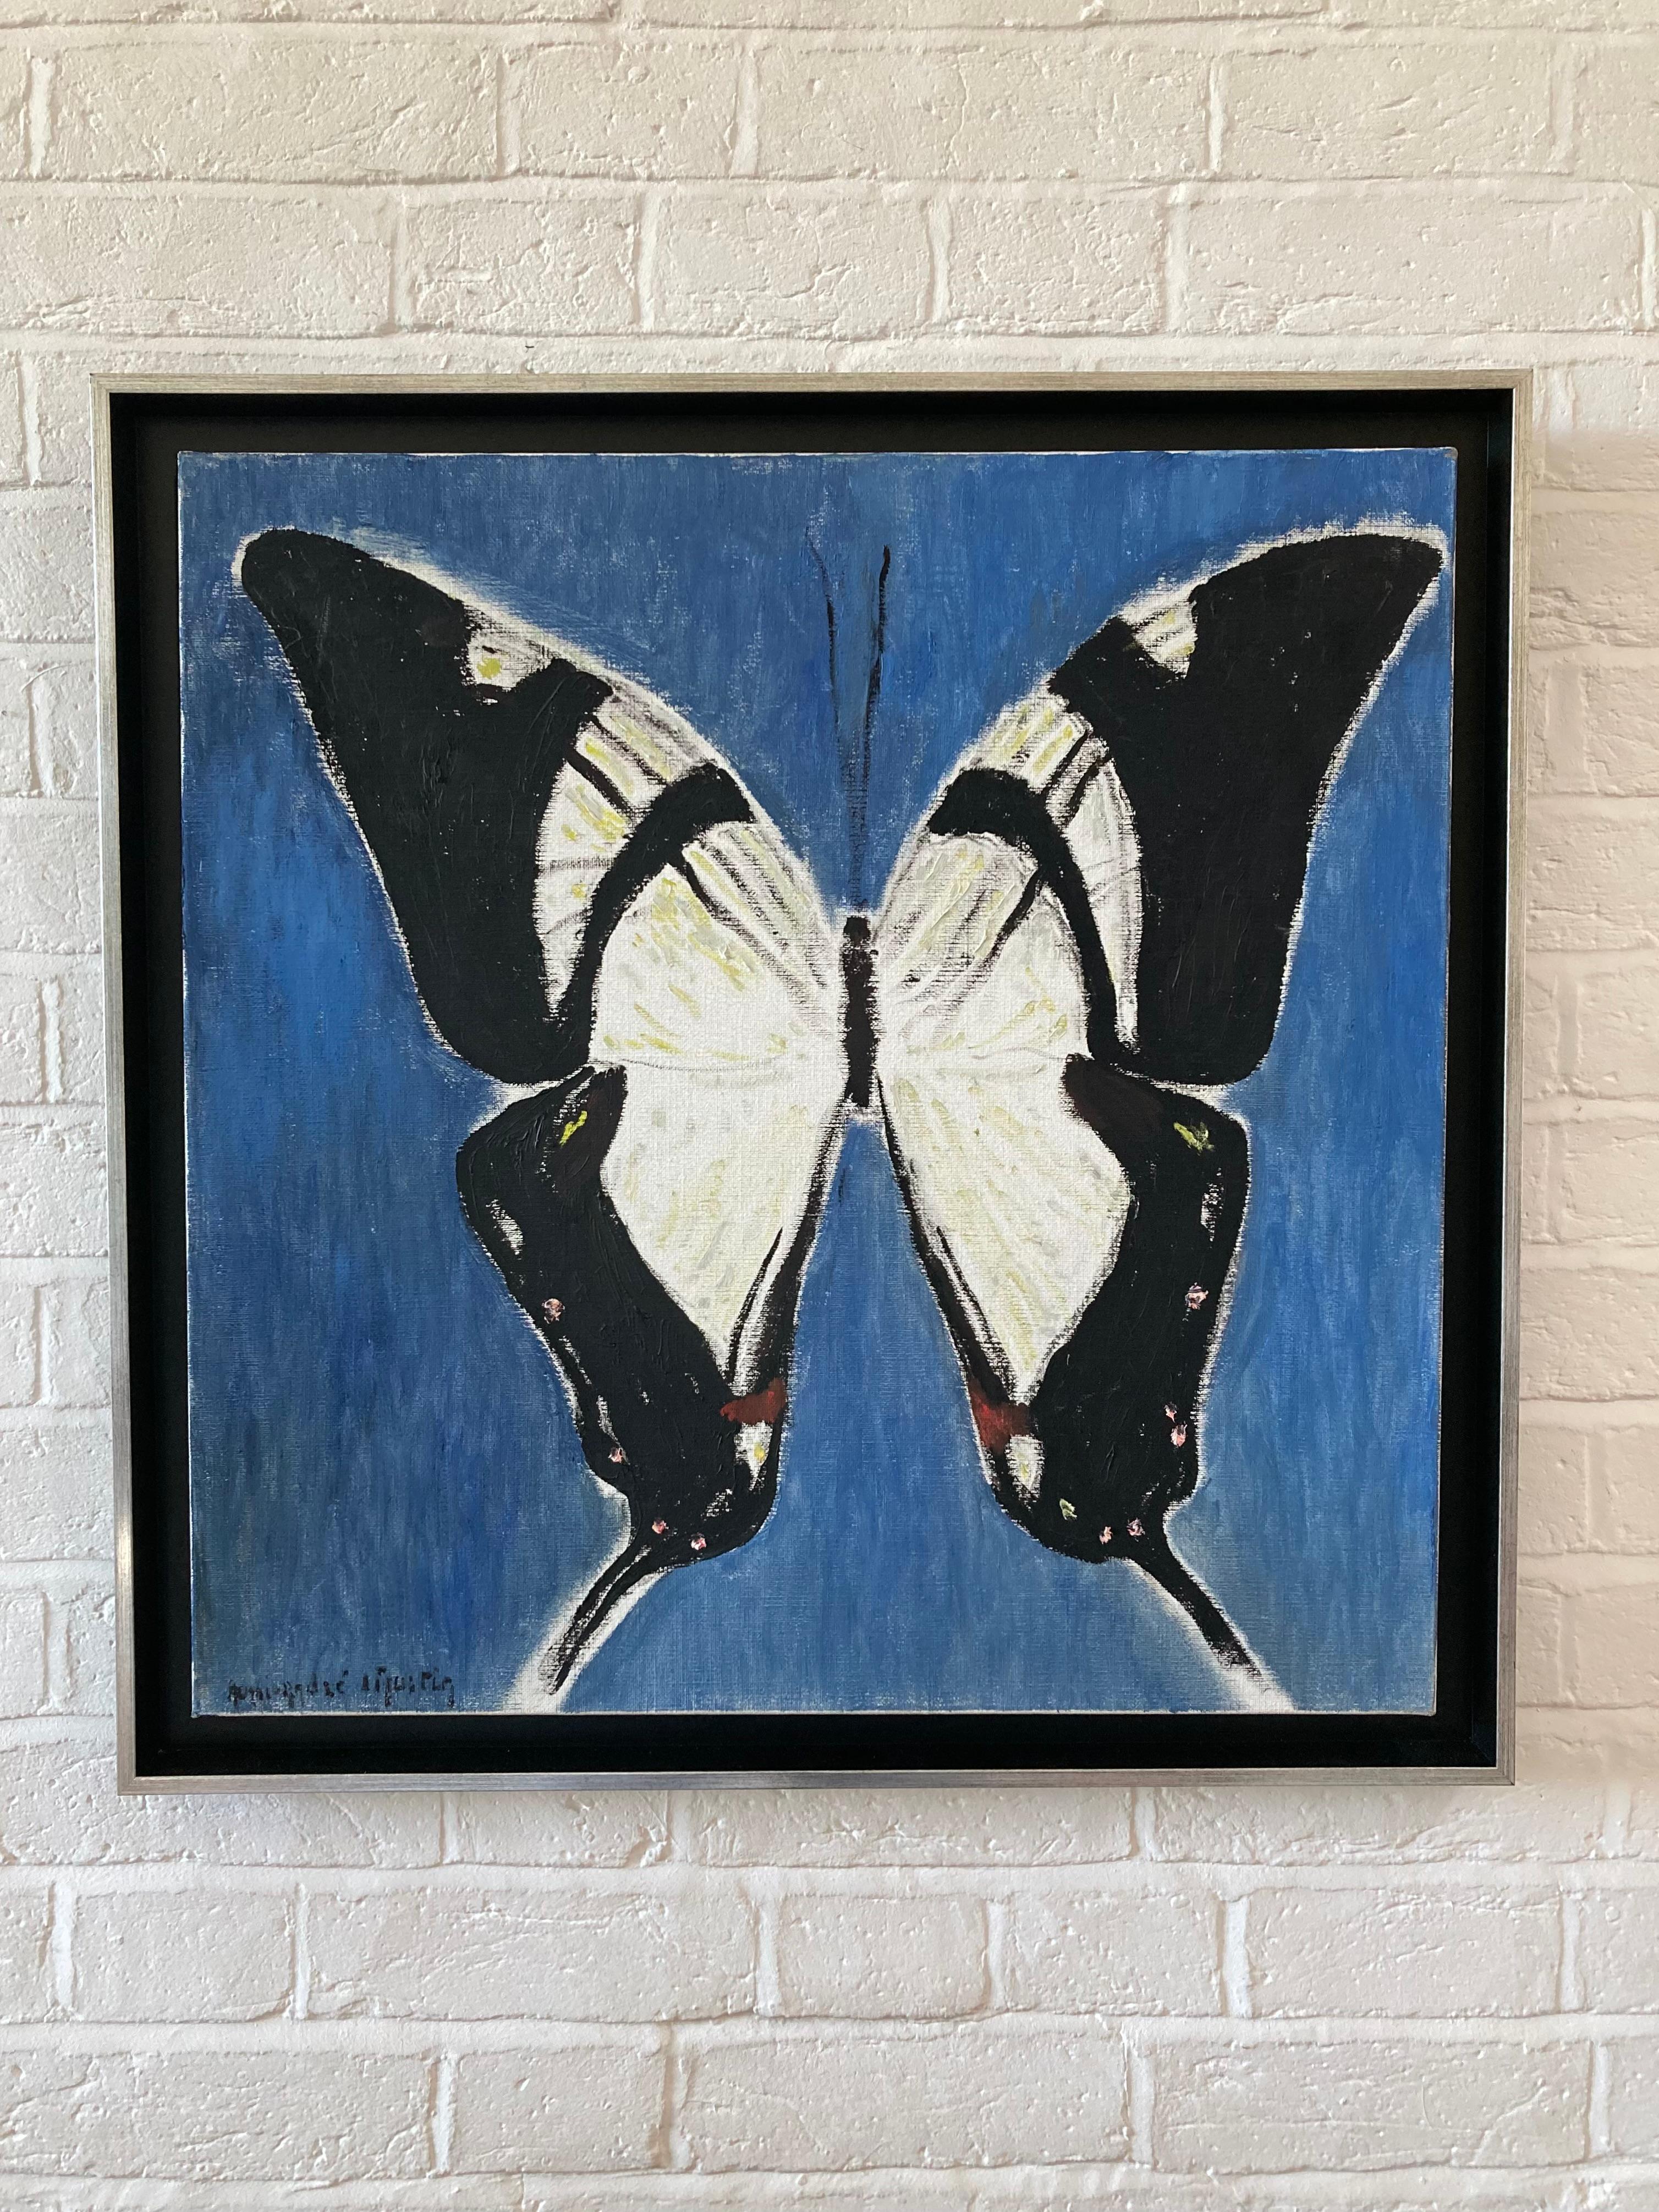 Une image incroyablement frappante d'un papillon Swallowtail. Peint avec beaucoup d'énergie et de style. Le résultat serait magnifique sur un mur blanc.

Henri-André Martin (1918-2004)
Un papillon de type queue d'hirondelle
Signé
Huile sur toile
23½